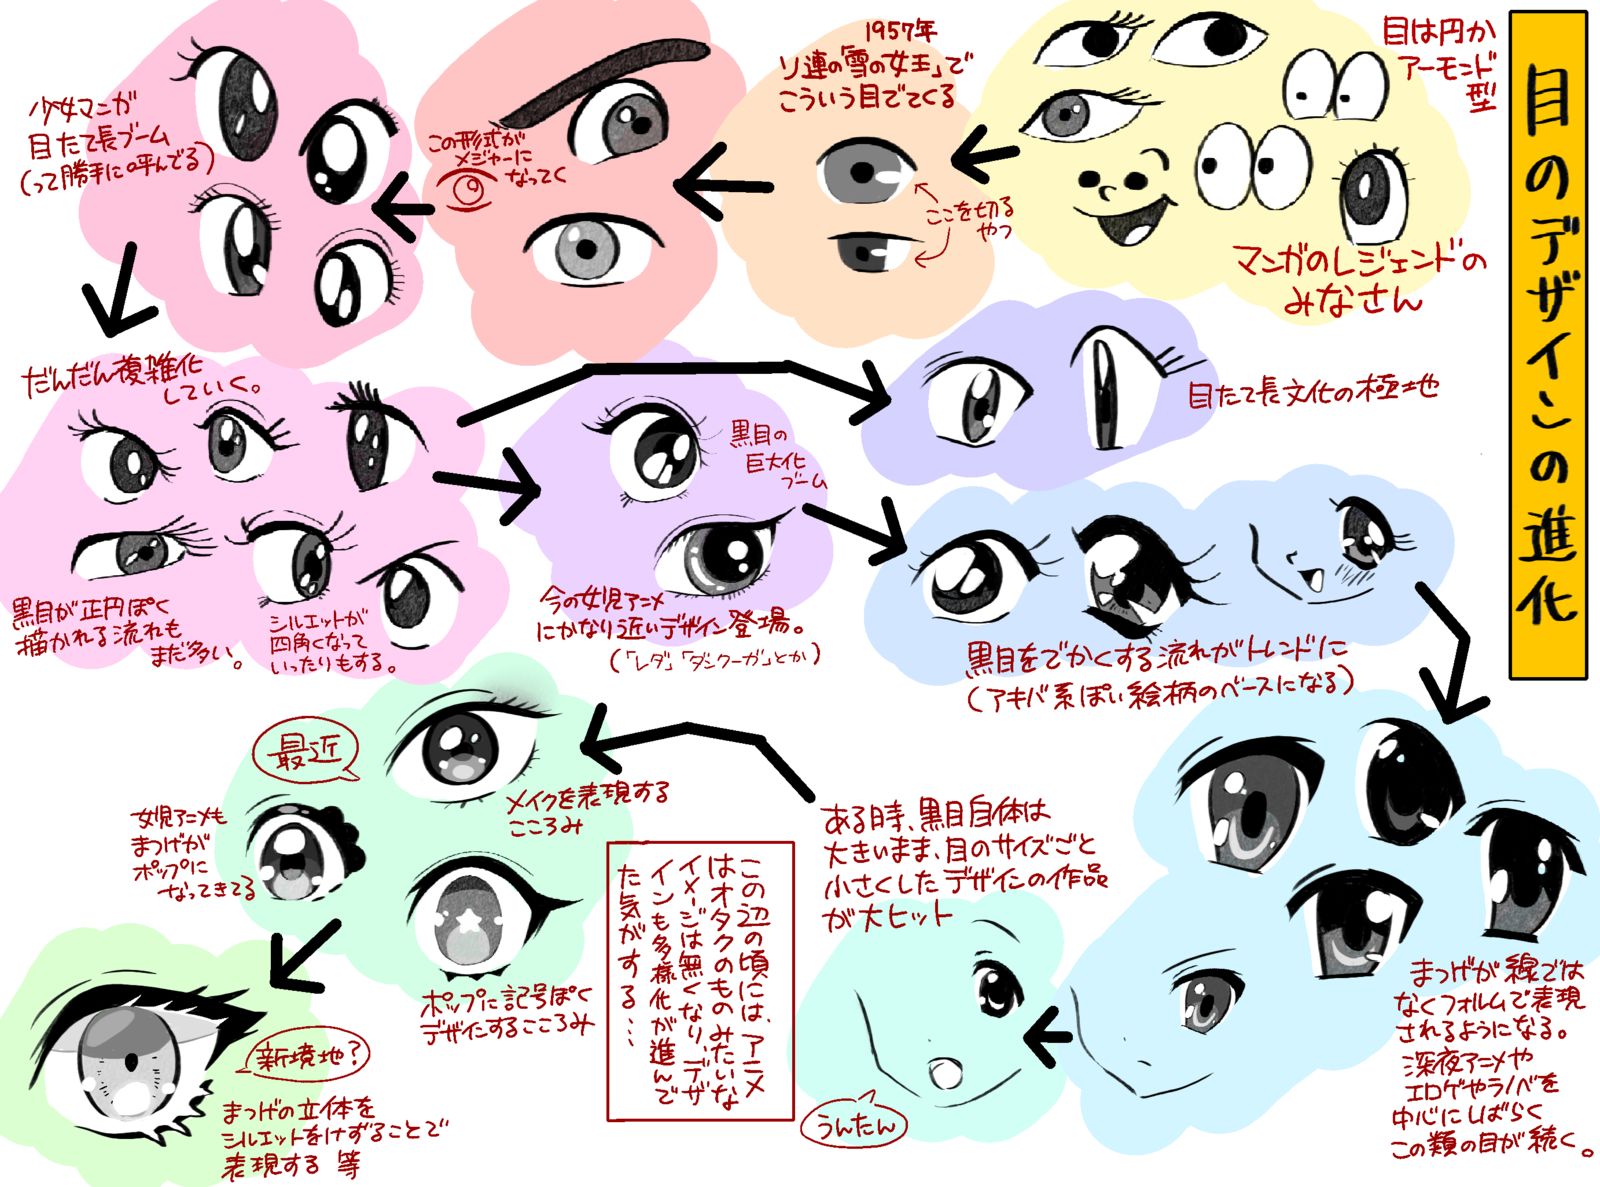 眼睛的设计进化插画图片壁纸